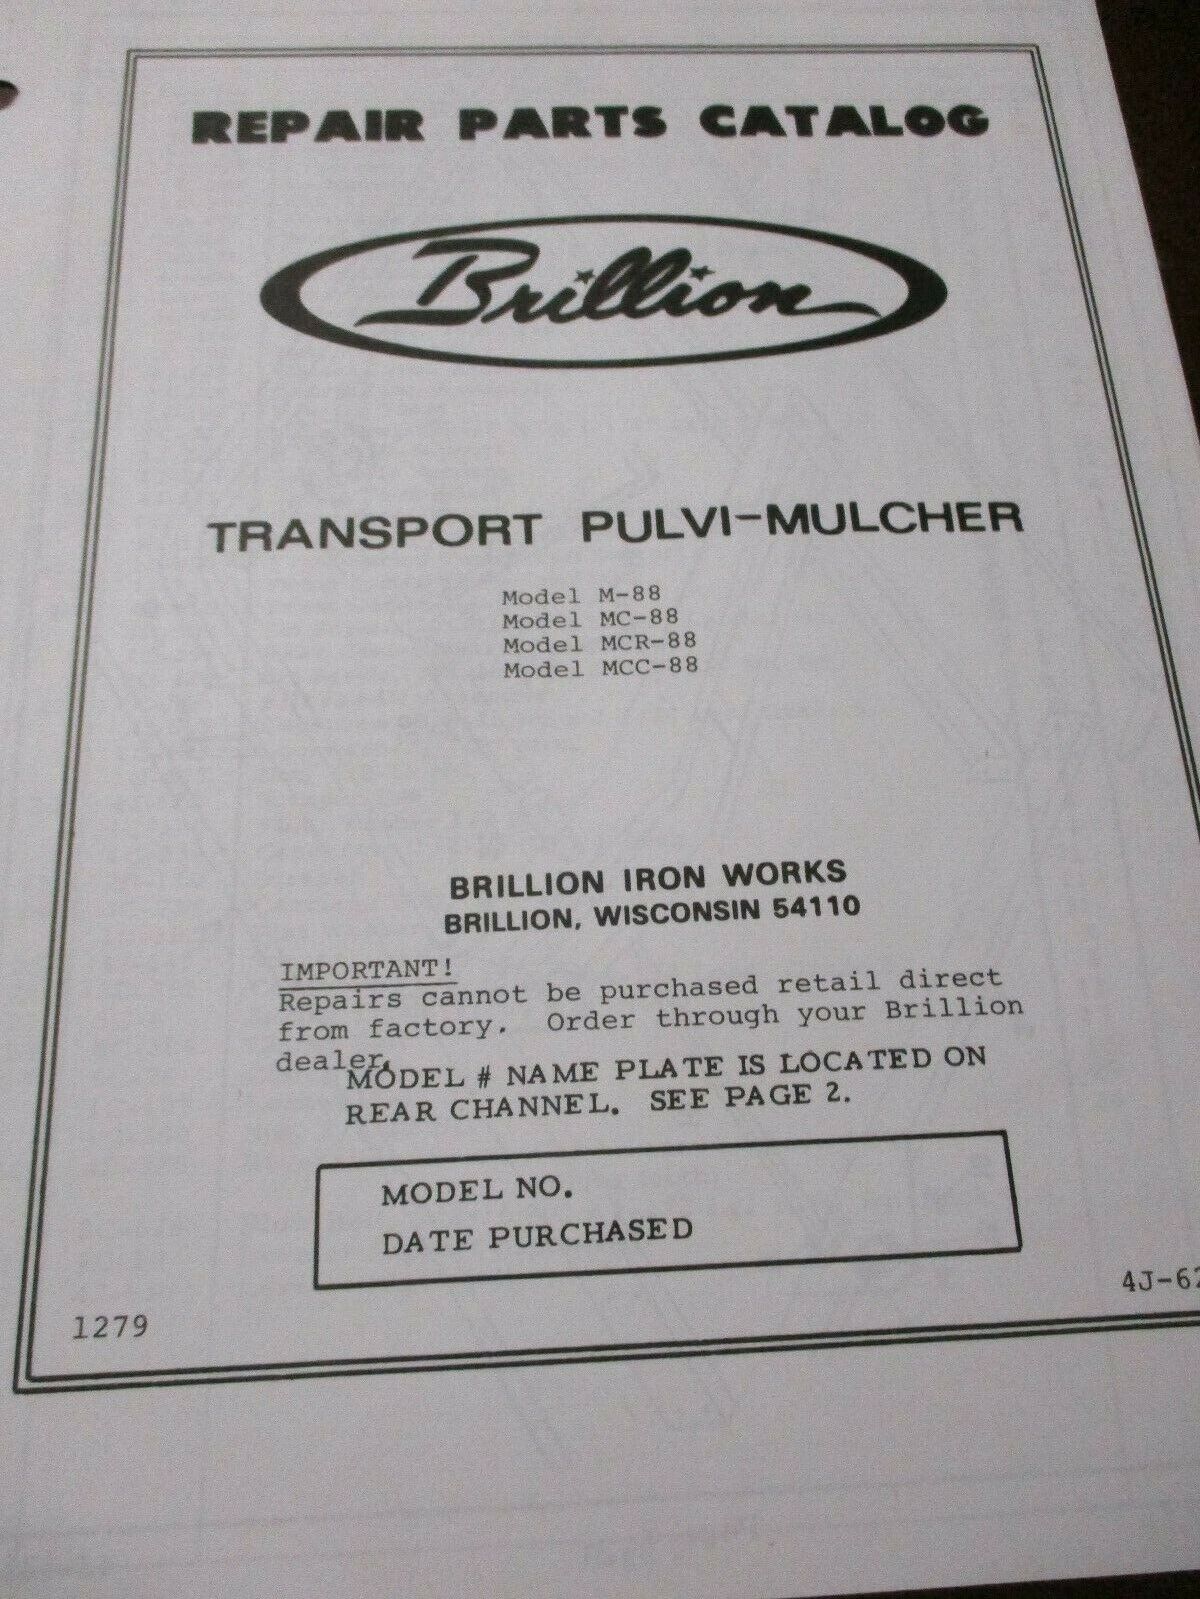 Brillion Models 88 Transport Pulvi-Mulcher Parts Catalog